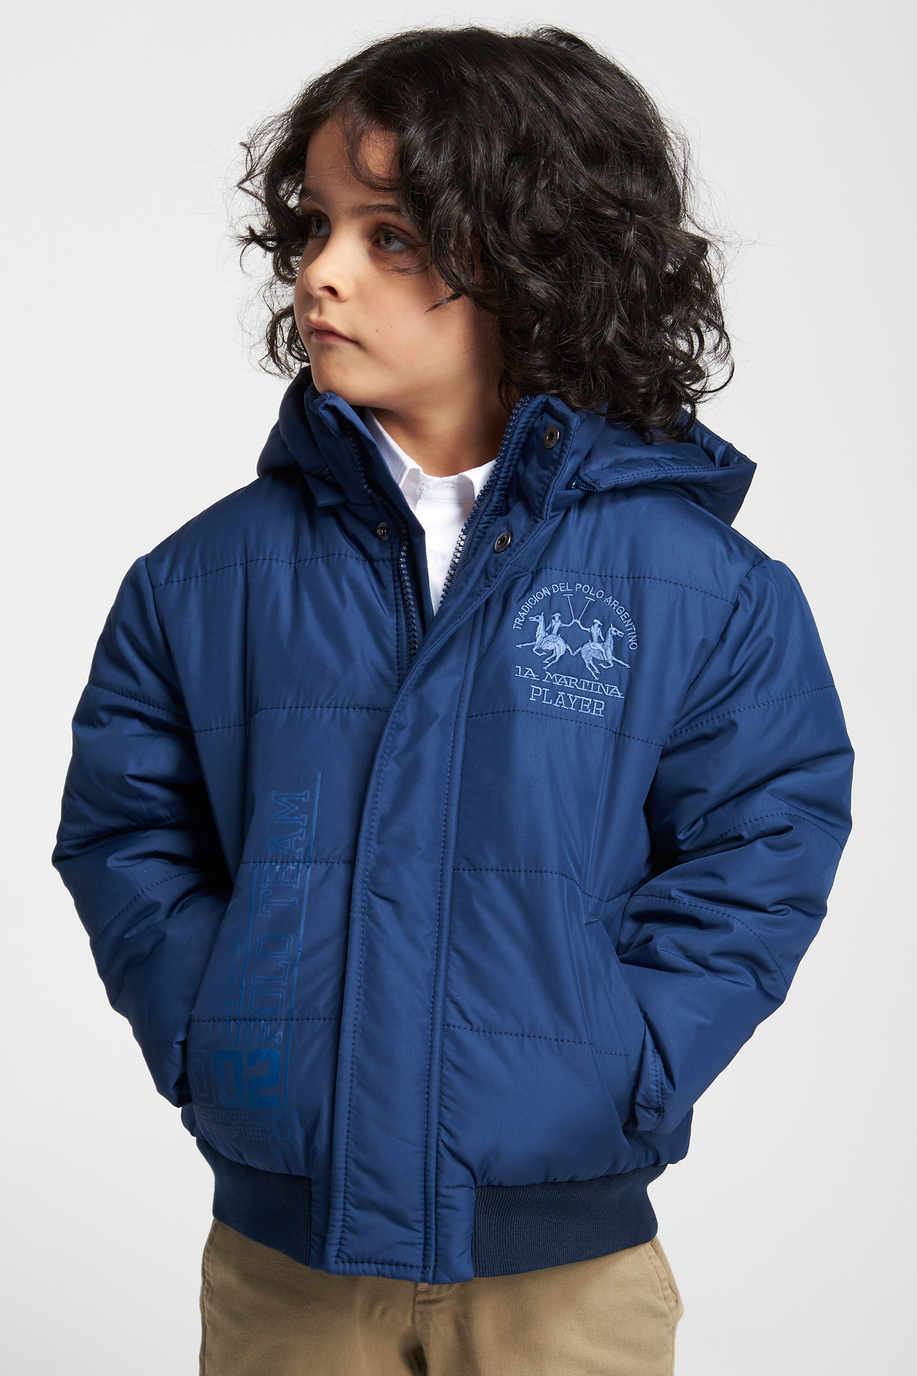 Unifarbene Jacke mit Kapuze - Kinder | La Martina - Official Online Shop